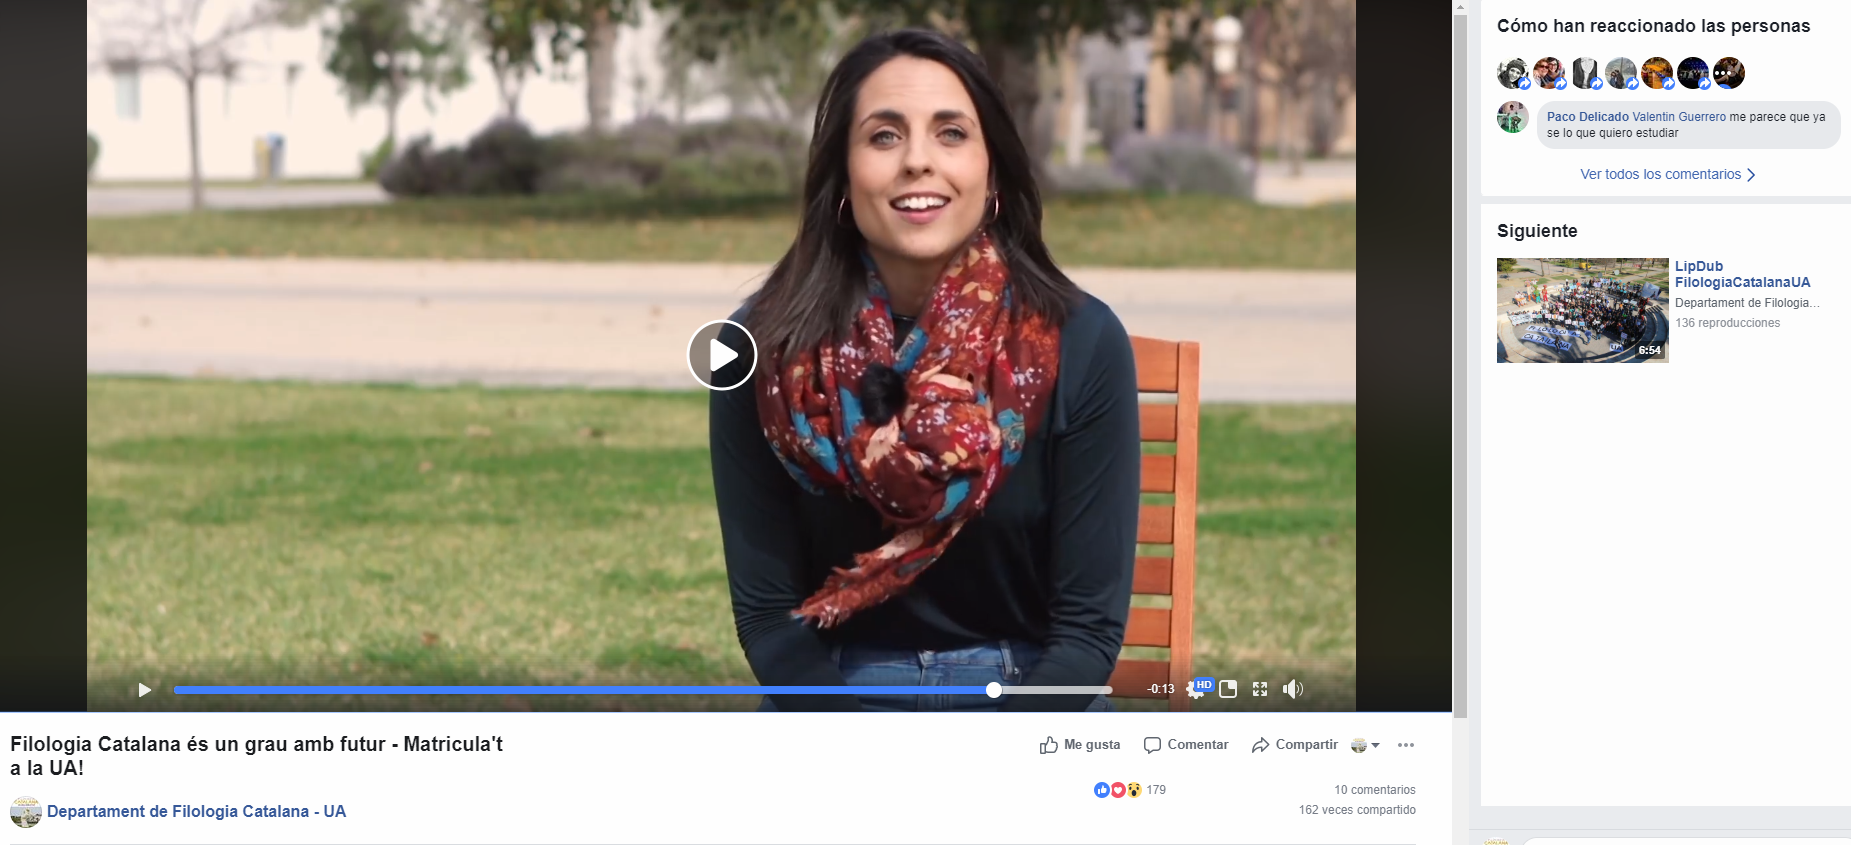 Campaña de publicidad para Filología Catalana en la Universidad de Alicante